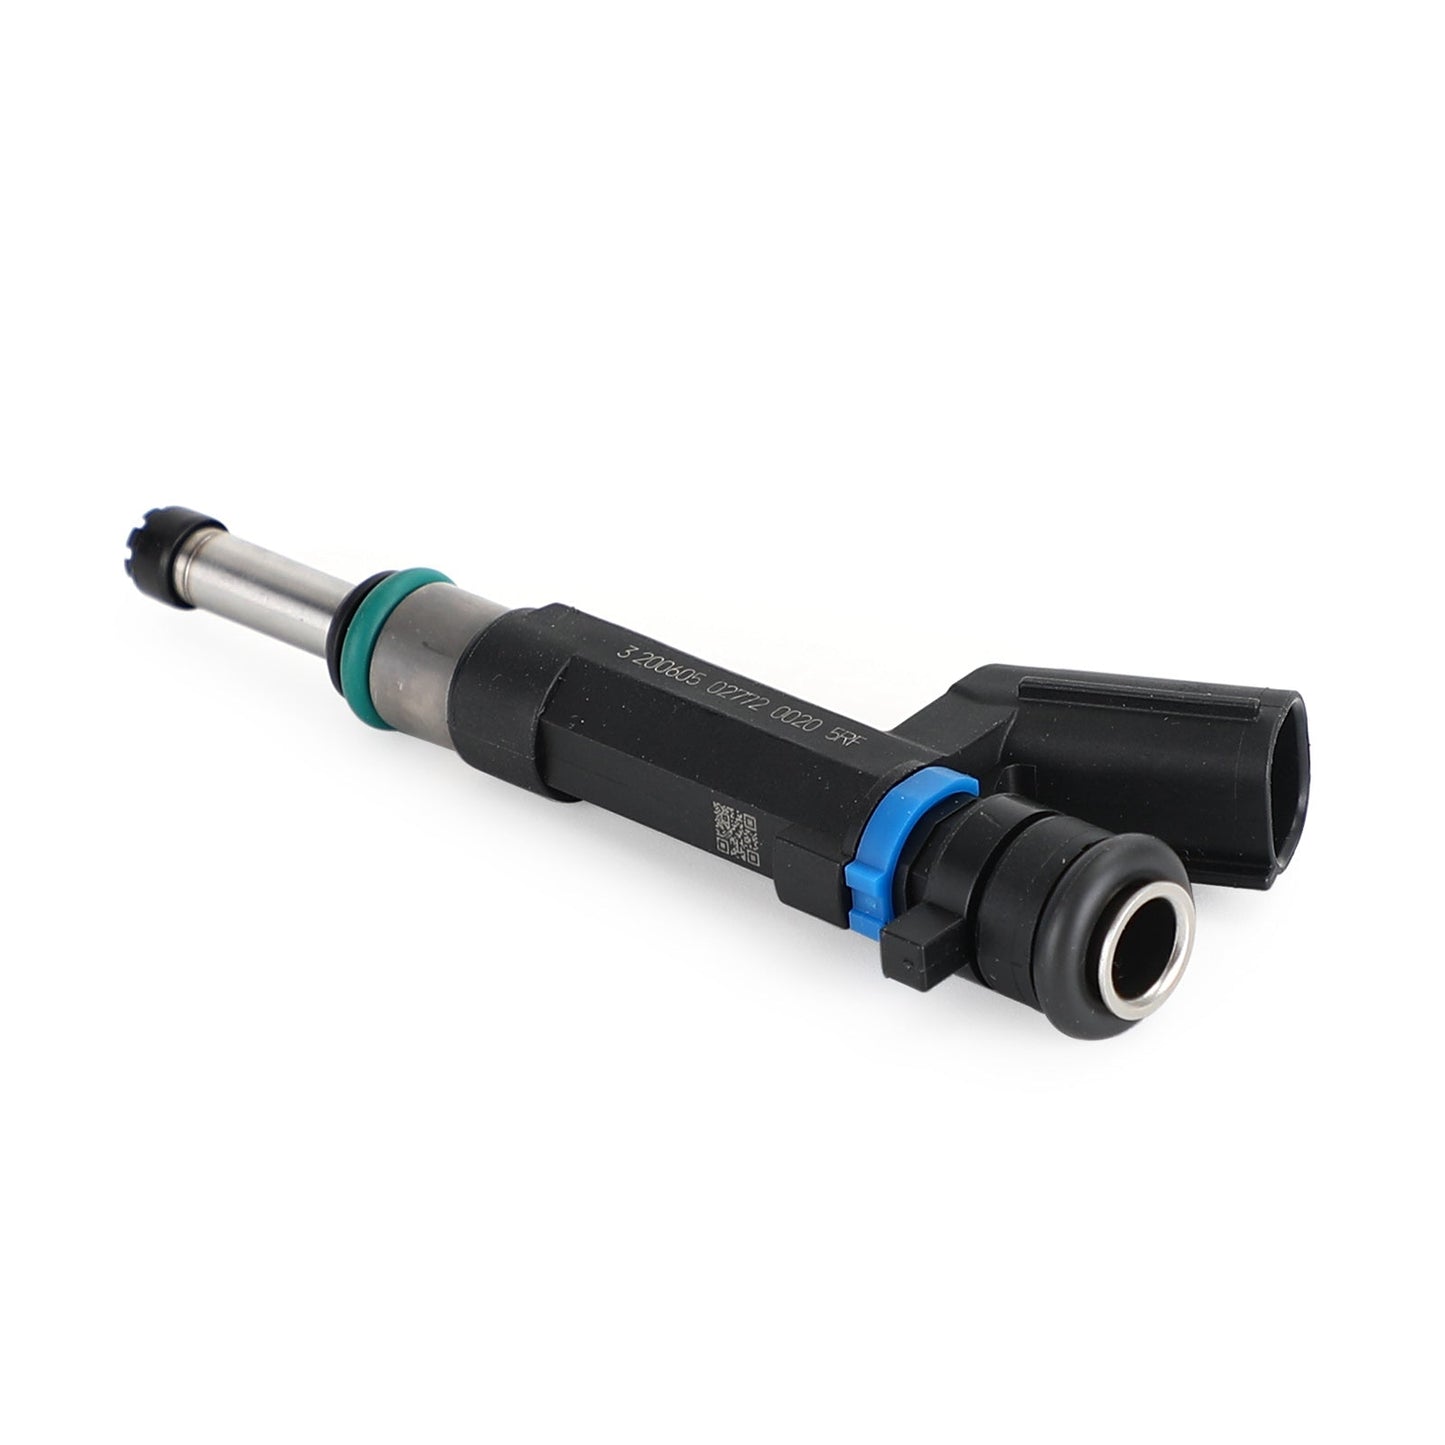 1PCS Fuel Injectors 16600-1KT0A Fit for Nissan Versa 1.6L L4 2012-2015 HR16DE